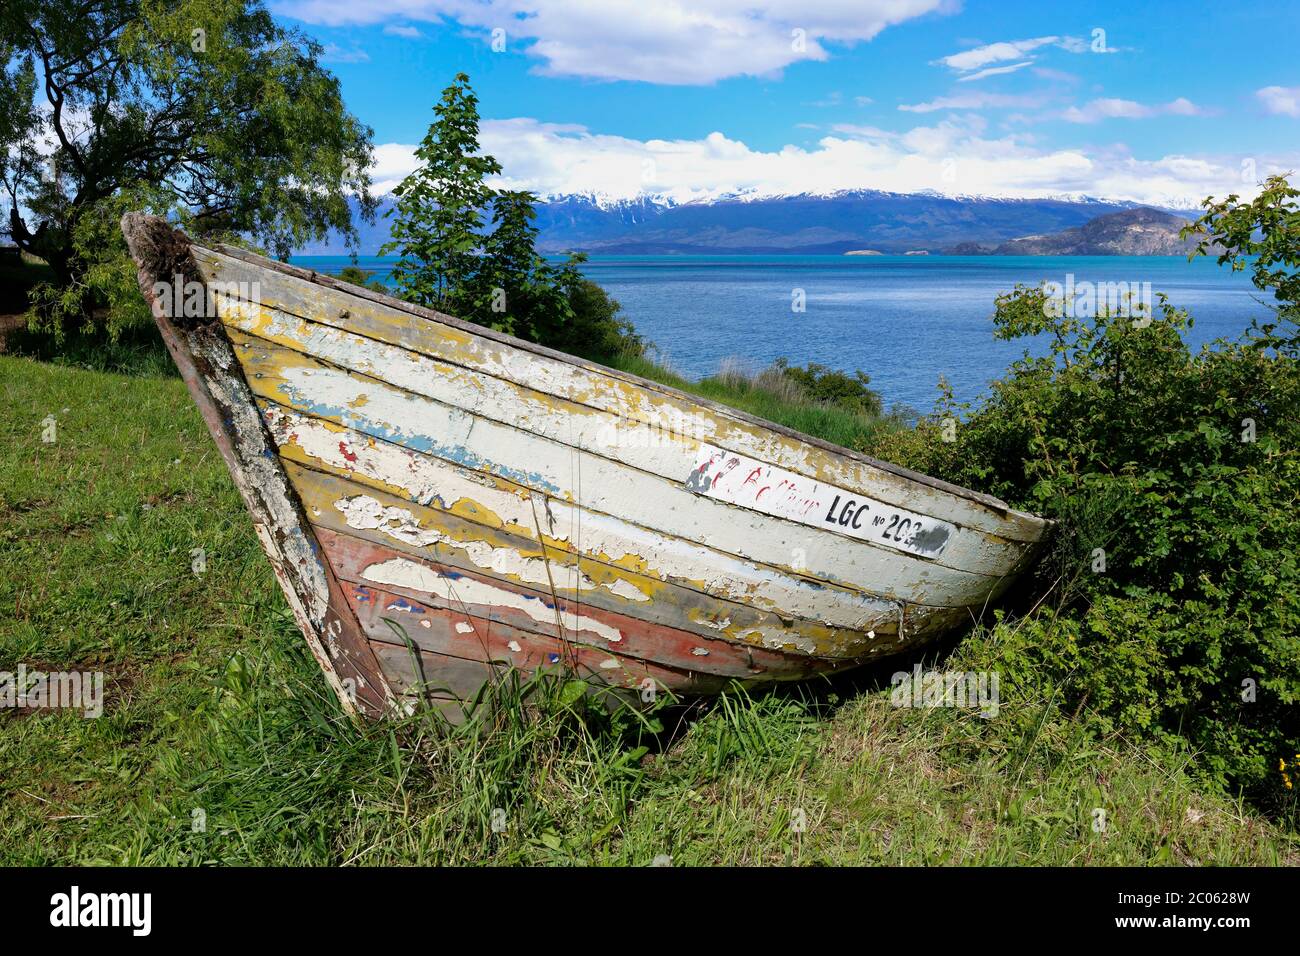 Vieux canoë en bois près du lac General Carrera, Puerto Rio Tranquilo, Carretera Austral, région d'Aysen, Patagonie, Chili Banque D'Images